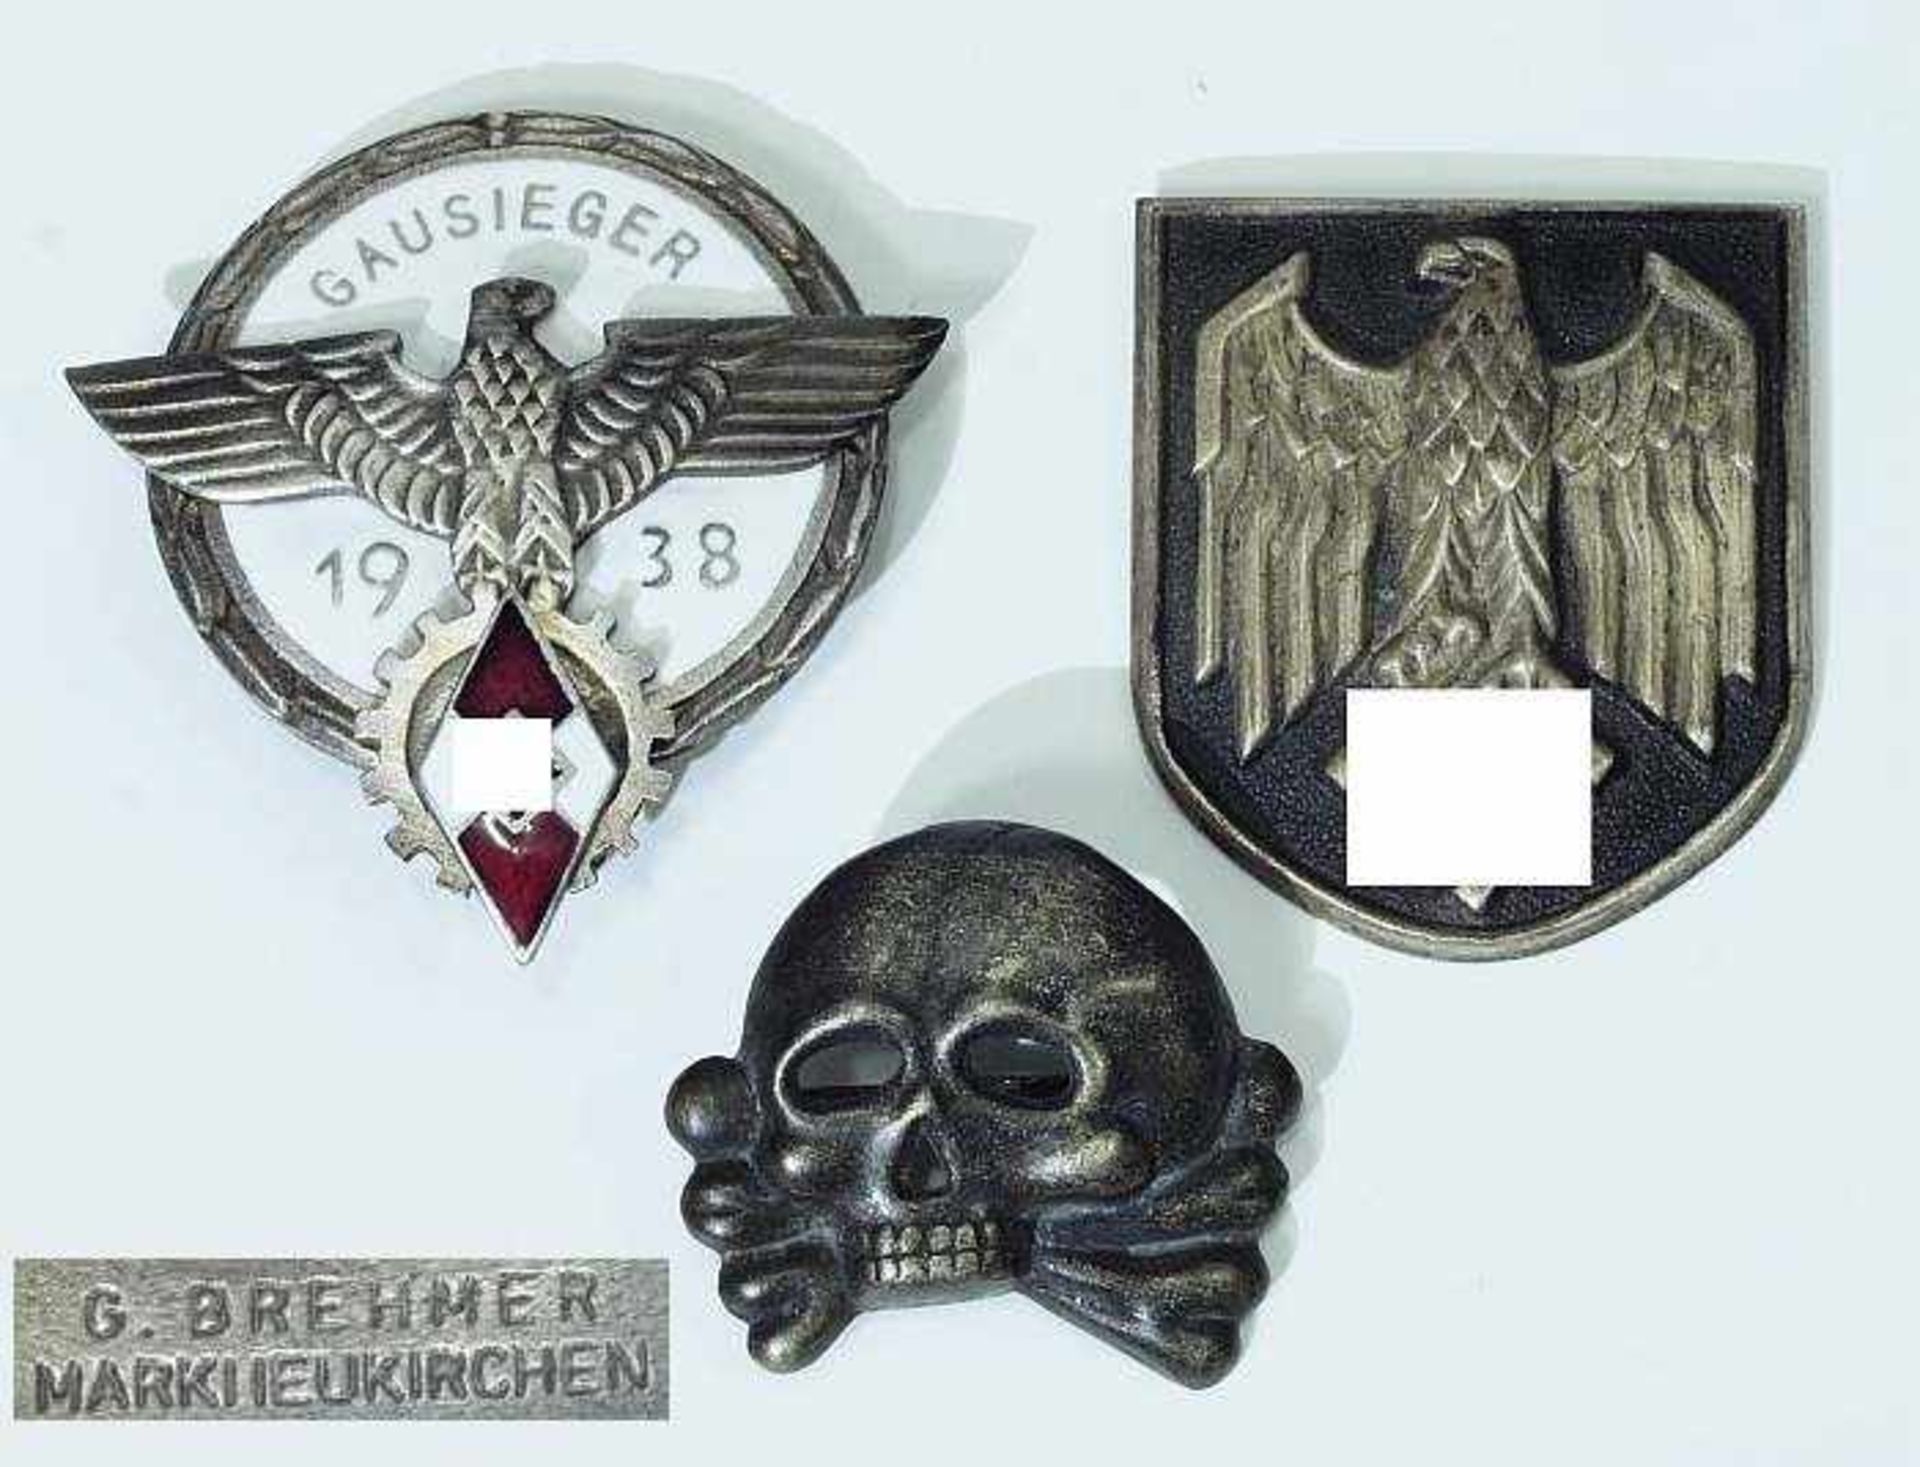 HJ - Gausieger-Abzeichen 1938. HJ - Gausieger-Abzeichen 1938 mit Hersteller G.Brehmer